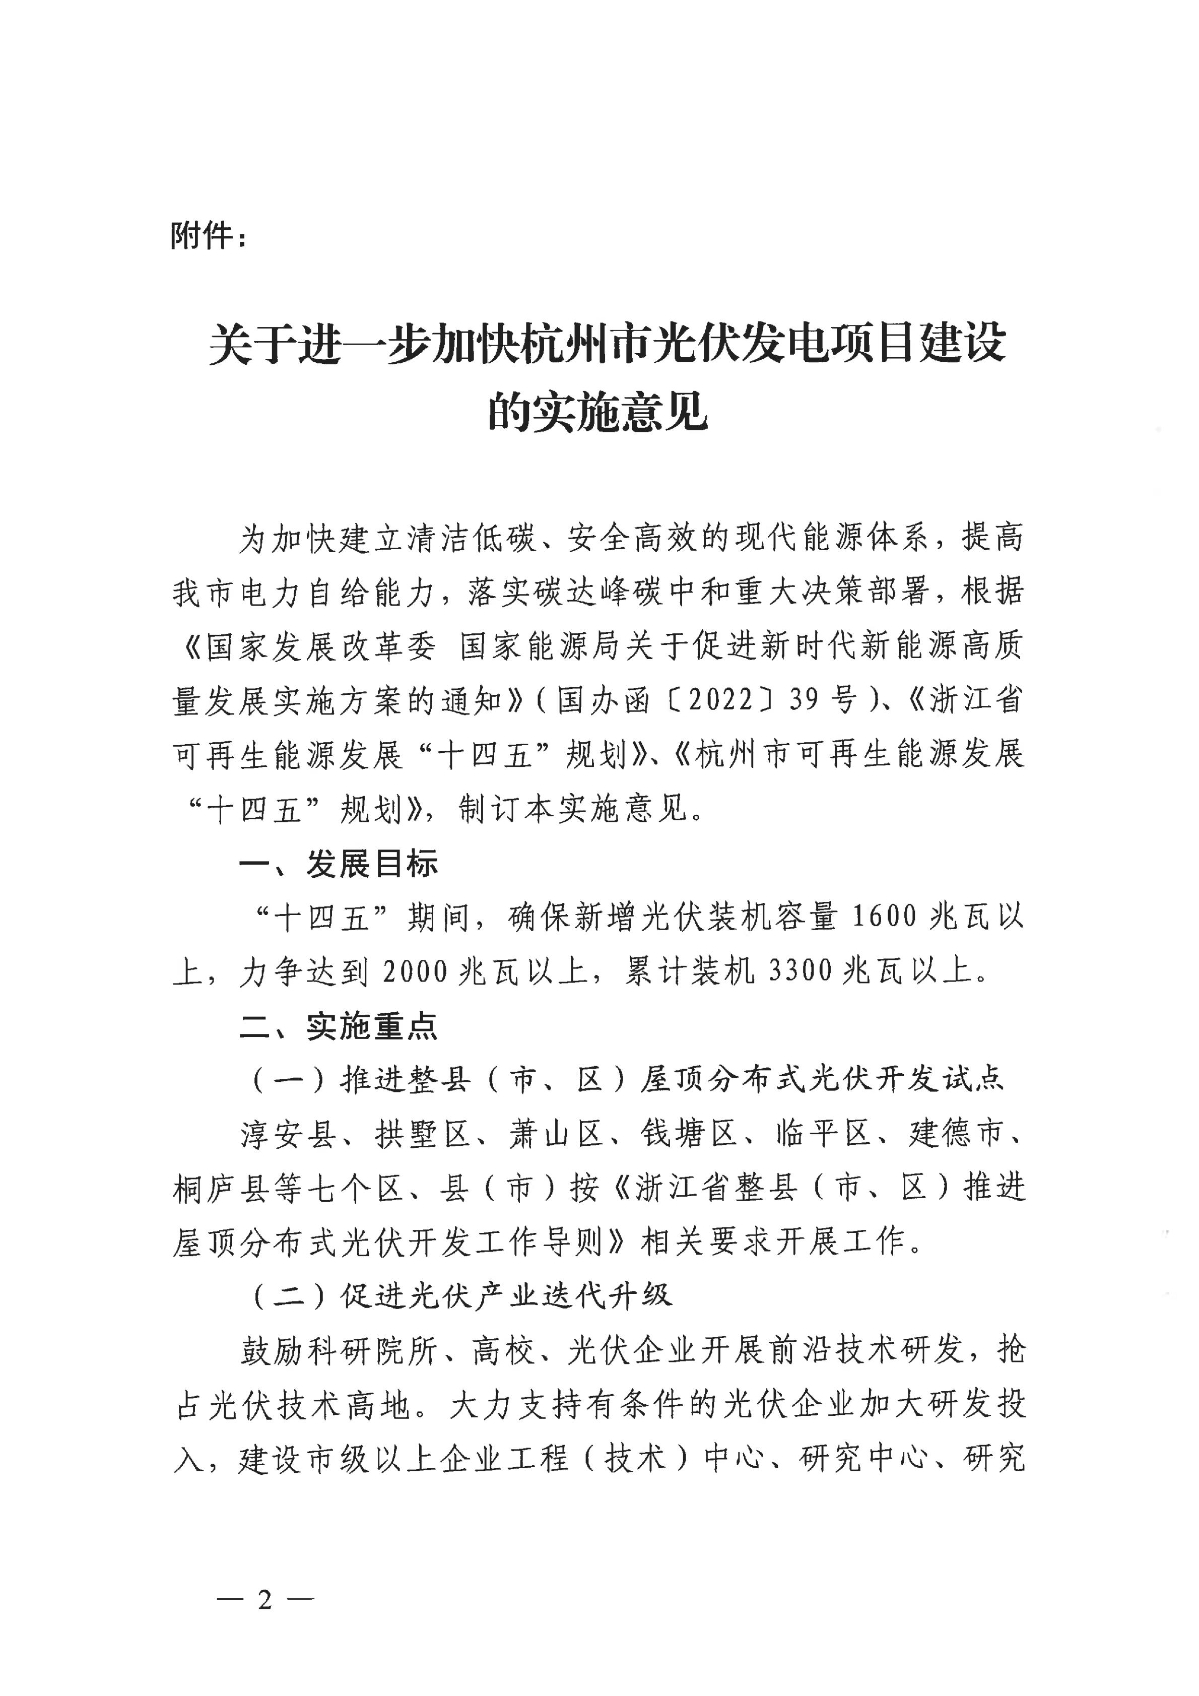 1128关于印发《关于进一步加快杭州市光伏发电项目建设的实施意见》的通知_01.jpg